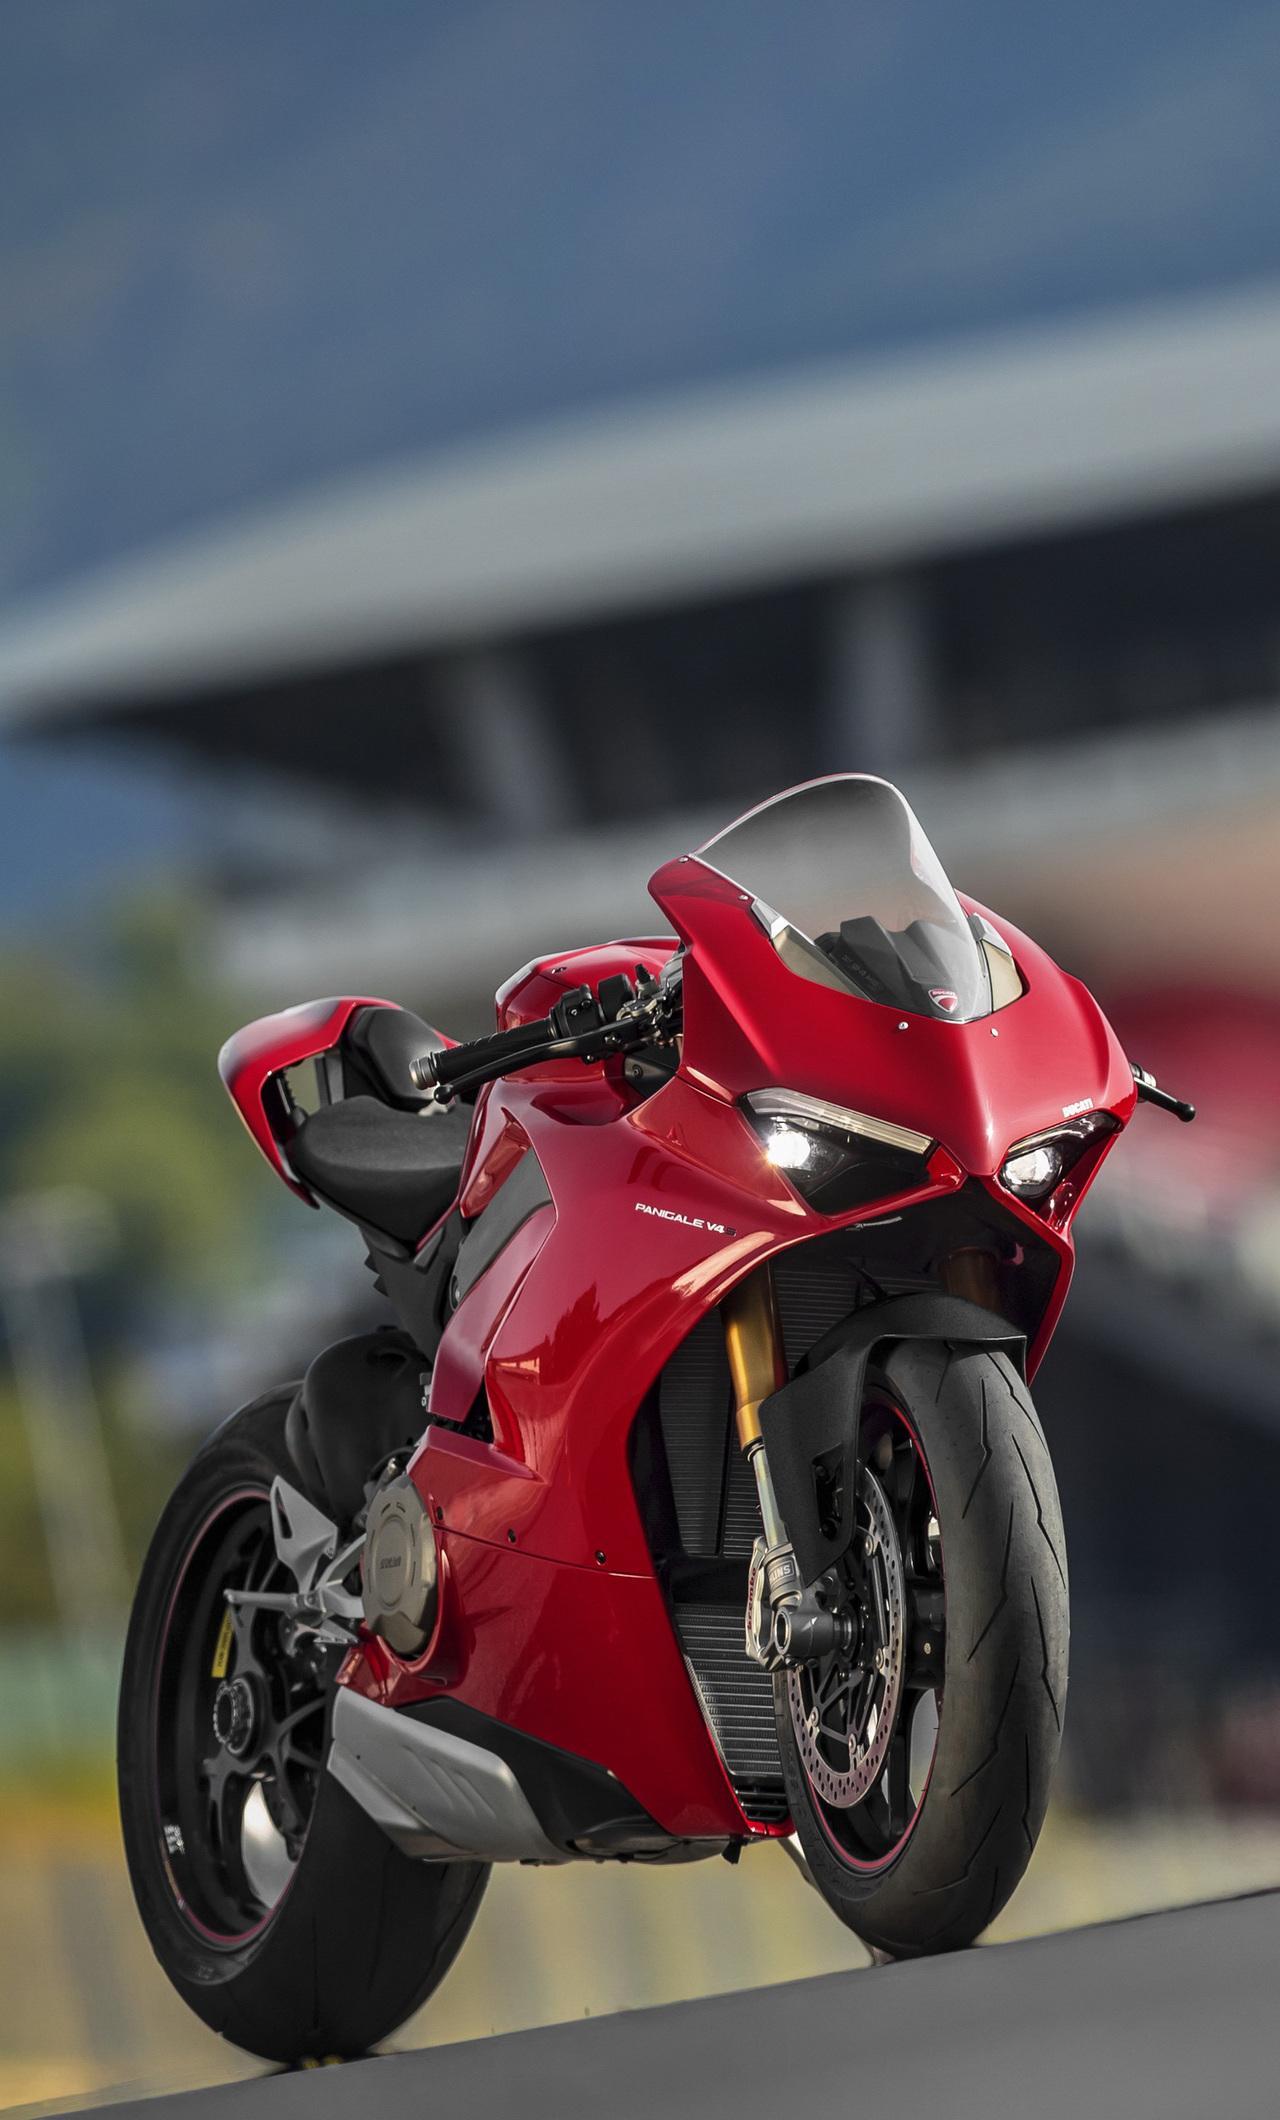 Ducati Wallpapers